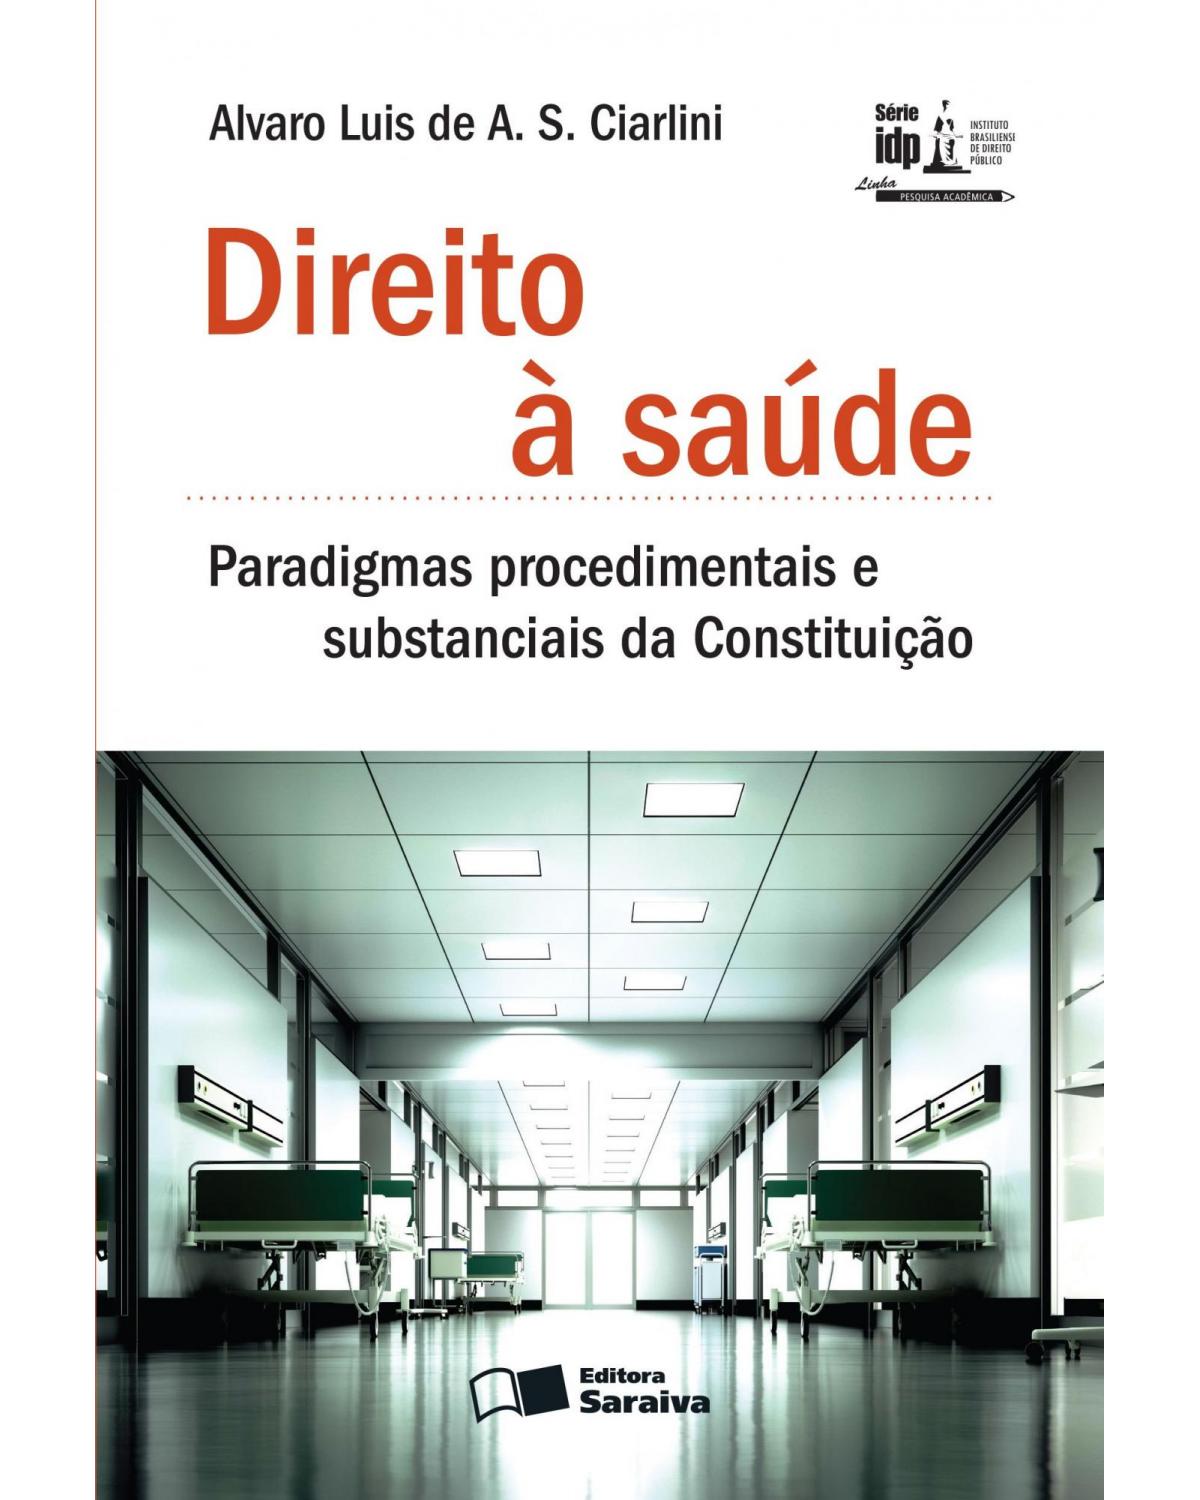 Direito à saúde - paradigmas procedimentais e substanciais da Constituição - 1ª Edição | 2013